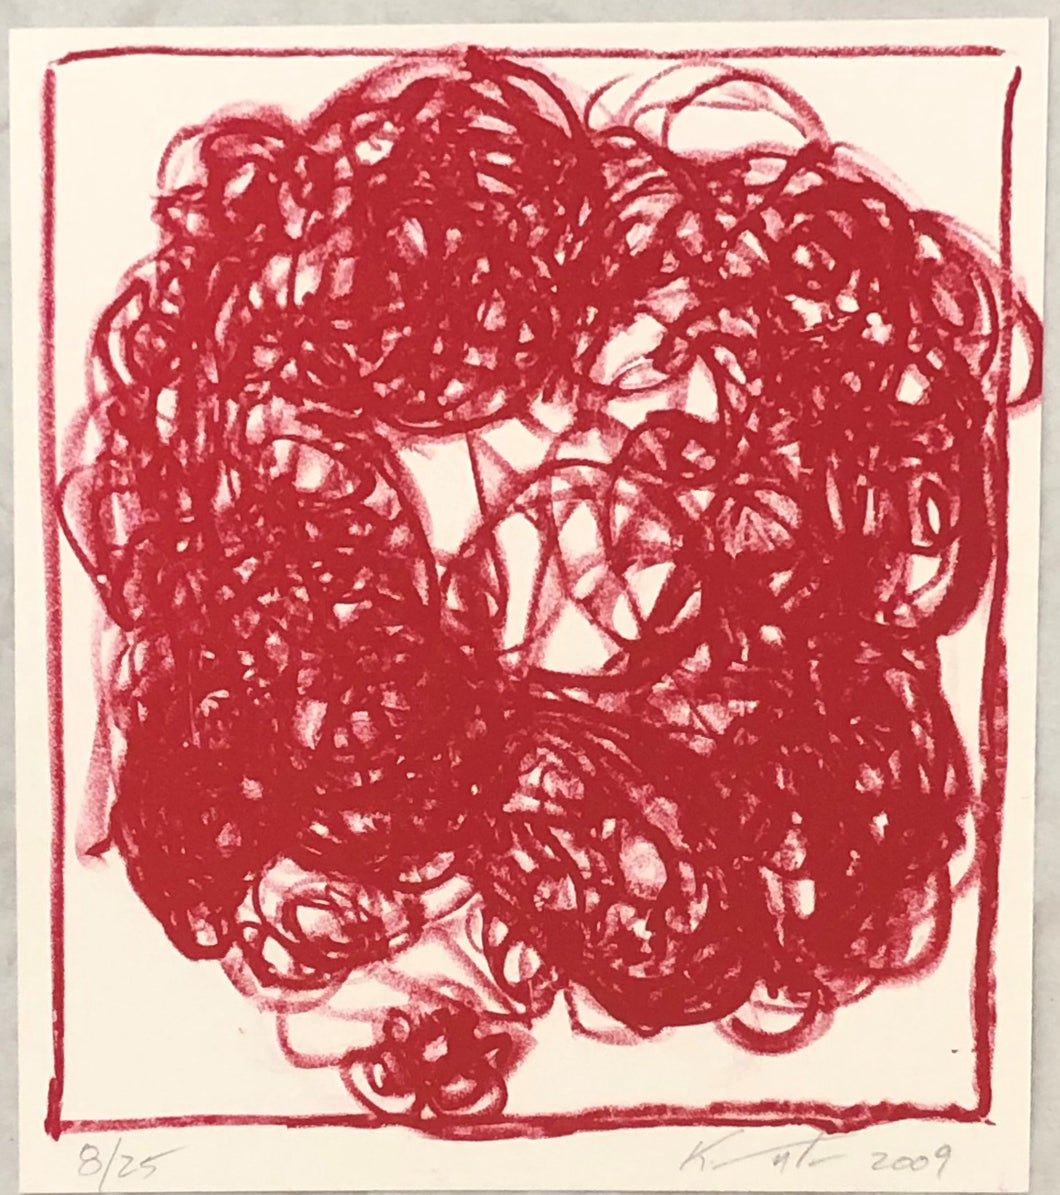 Jeff KOWATCH, Sans titre, 8-25, Lithographie, 21 x 17 cm, 2009